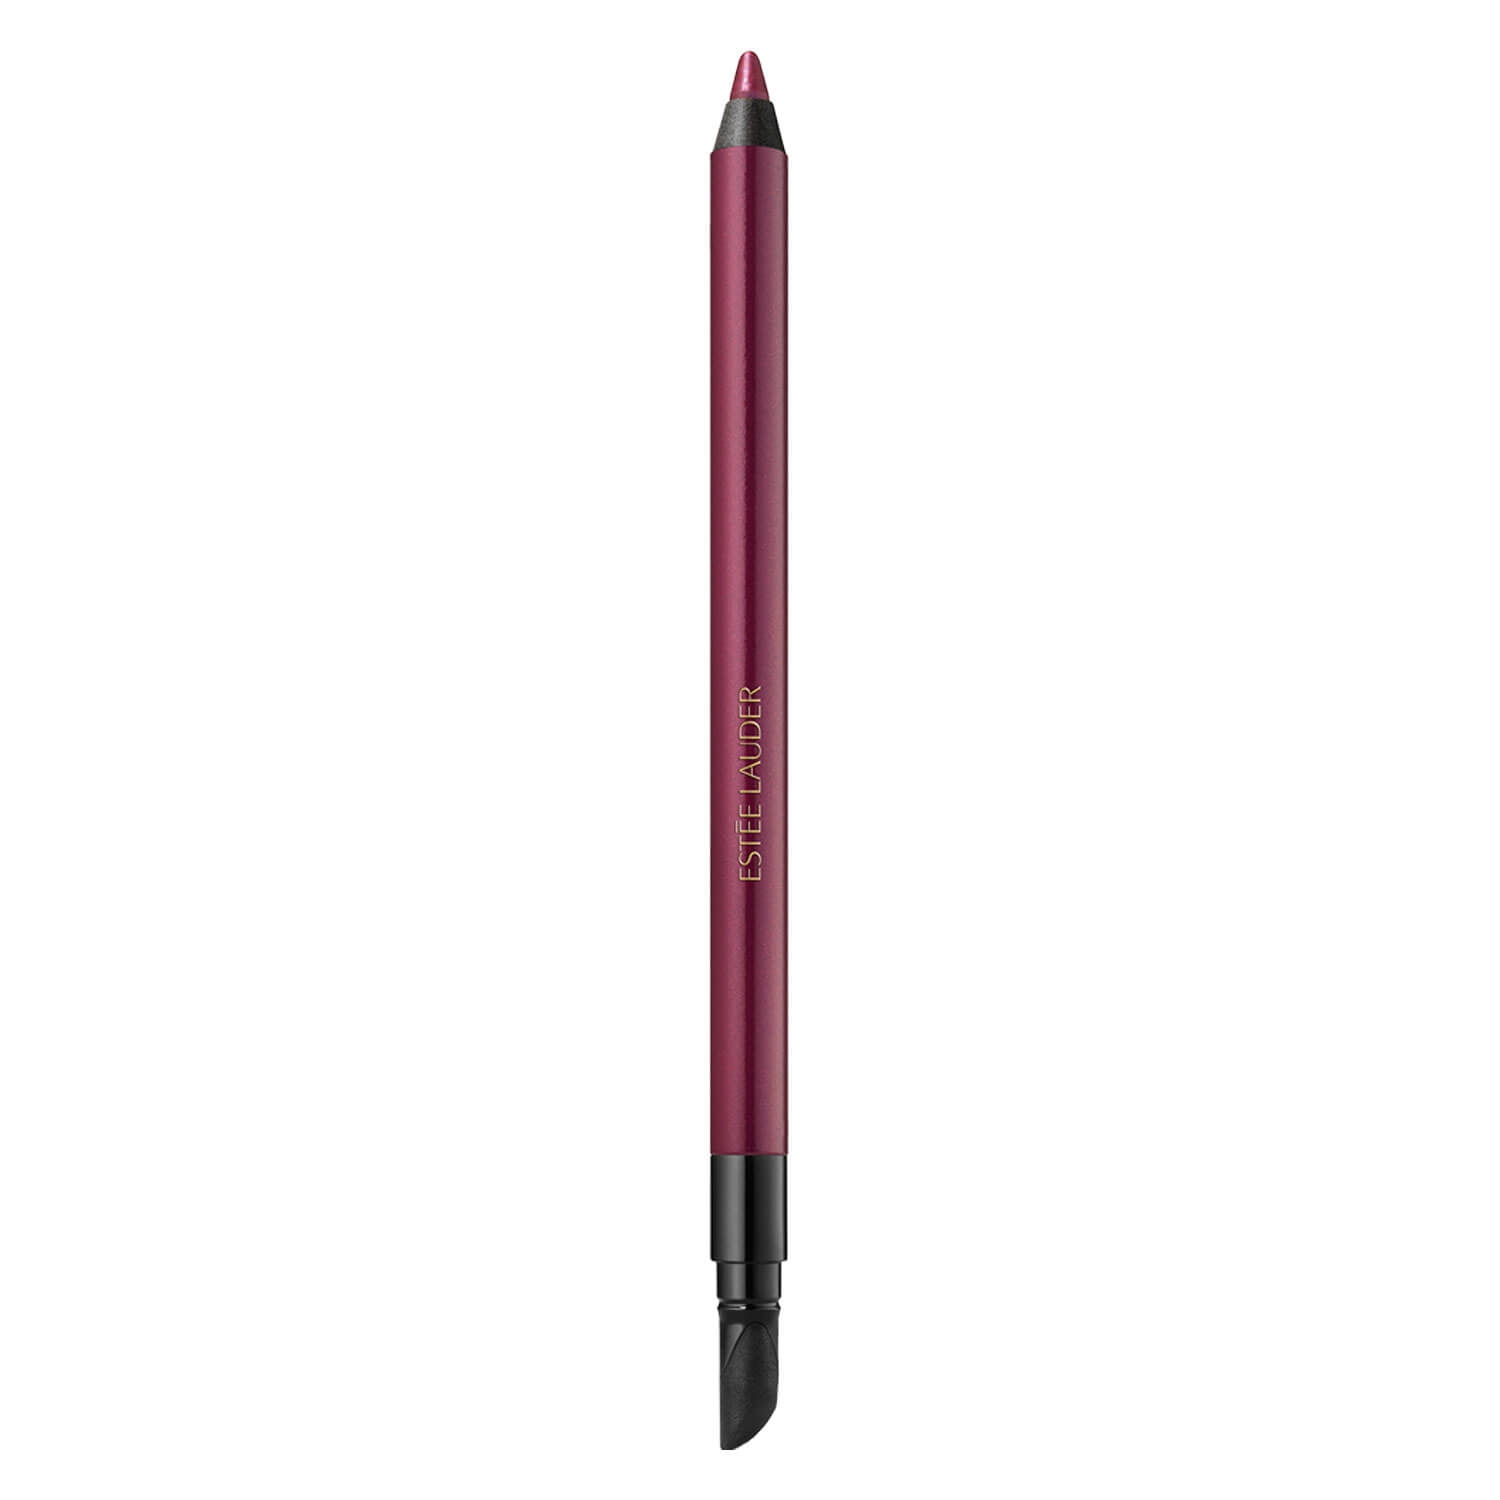 Produktbild von Double Wear - 24H Waterproof Gel Eye Pencil Aubergine